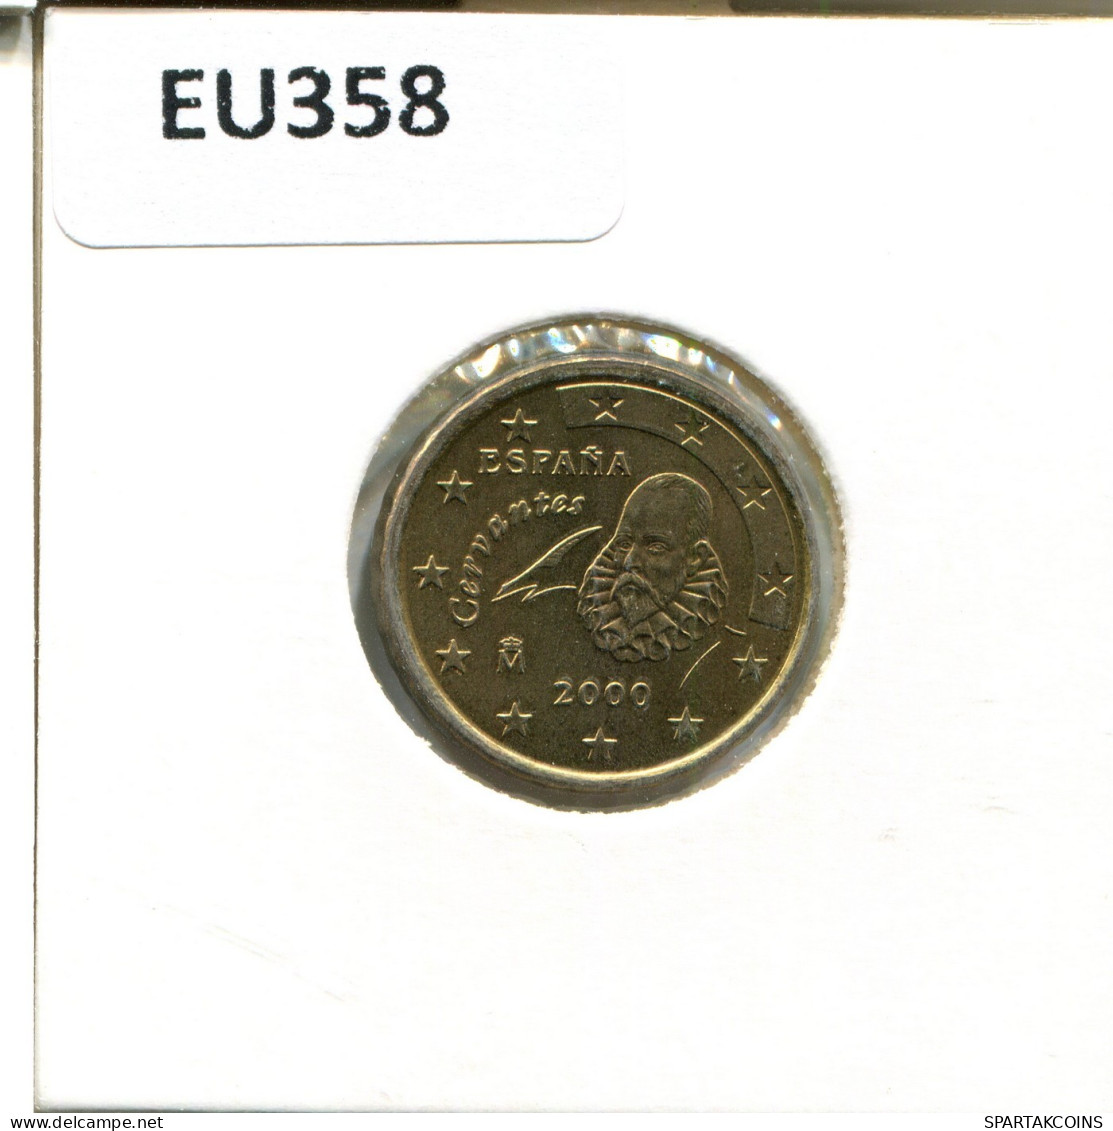 10 EURO CENTS 2000 ESPAÑA Moneda SPAIN #EU358.E.A - España